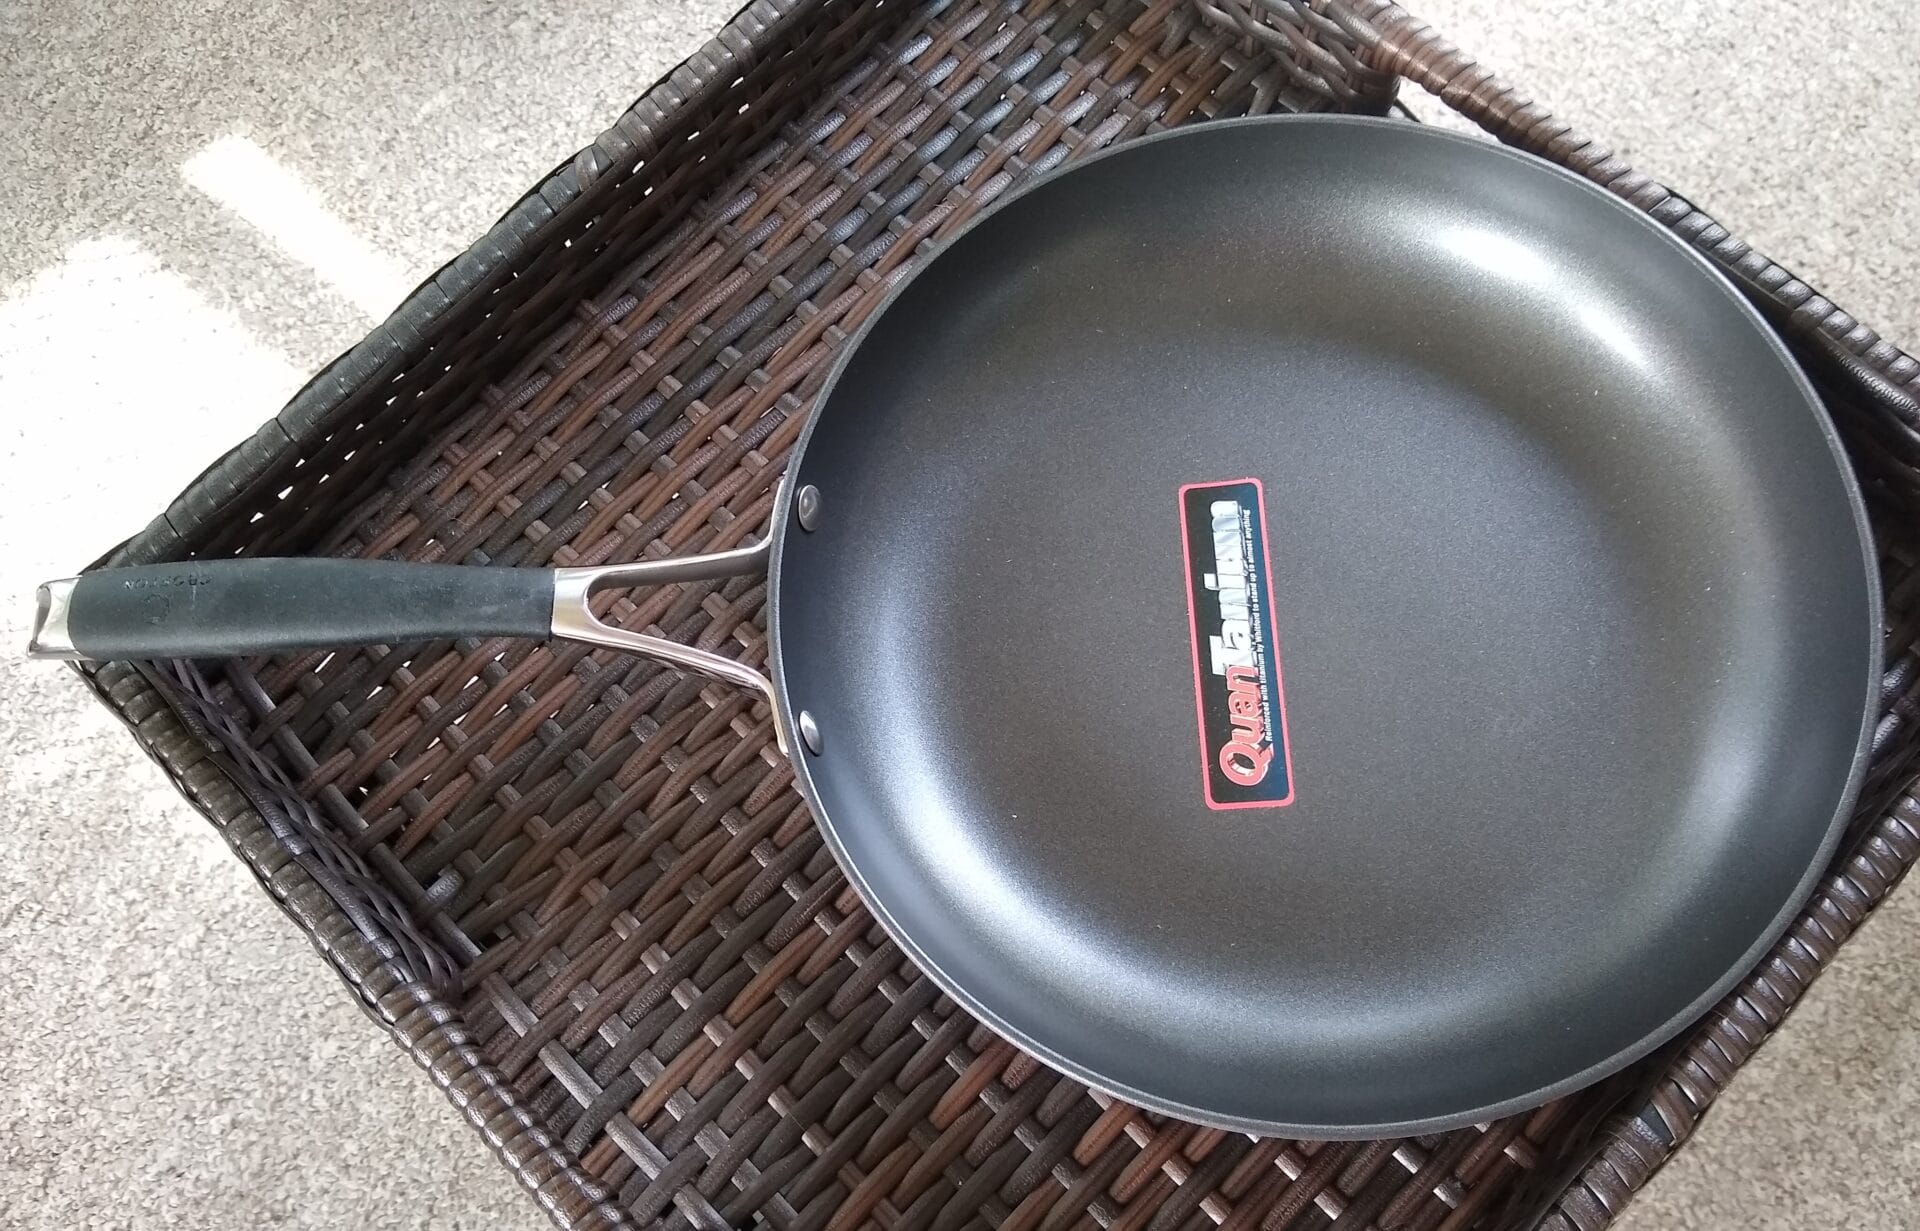 Open Thread: Crofton Cast Iron Lightweight Fry Pan and Lightweight Dutch  Oven